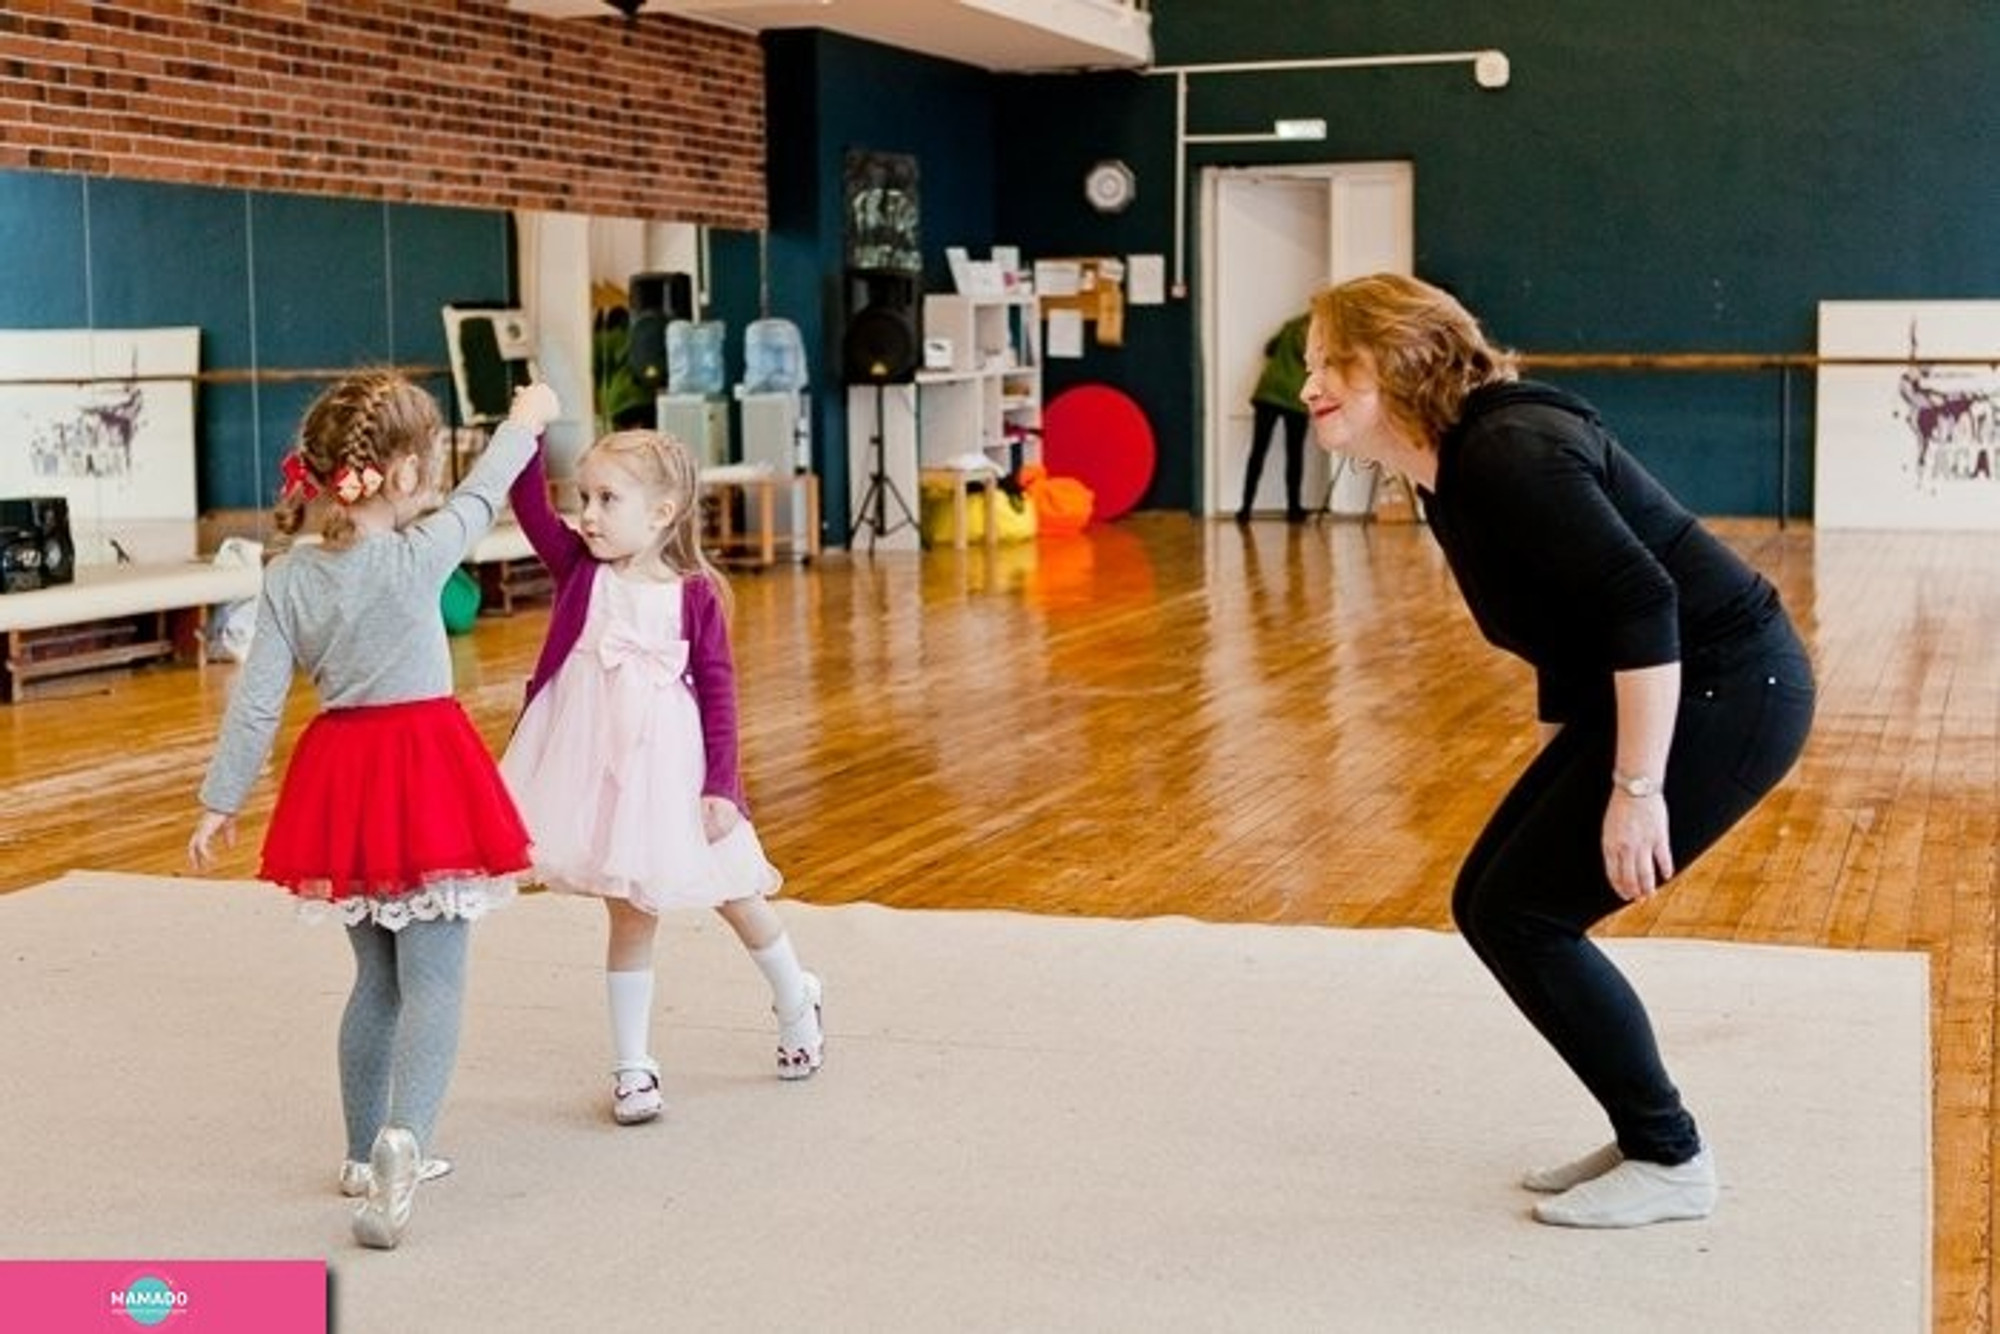 "Центр гармоничного развития человека", развивающие занятия для детей от 1,5 лет и студия танца на Канунникова, Волгоград 